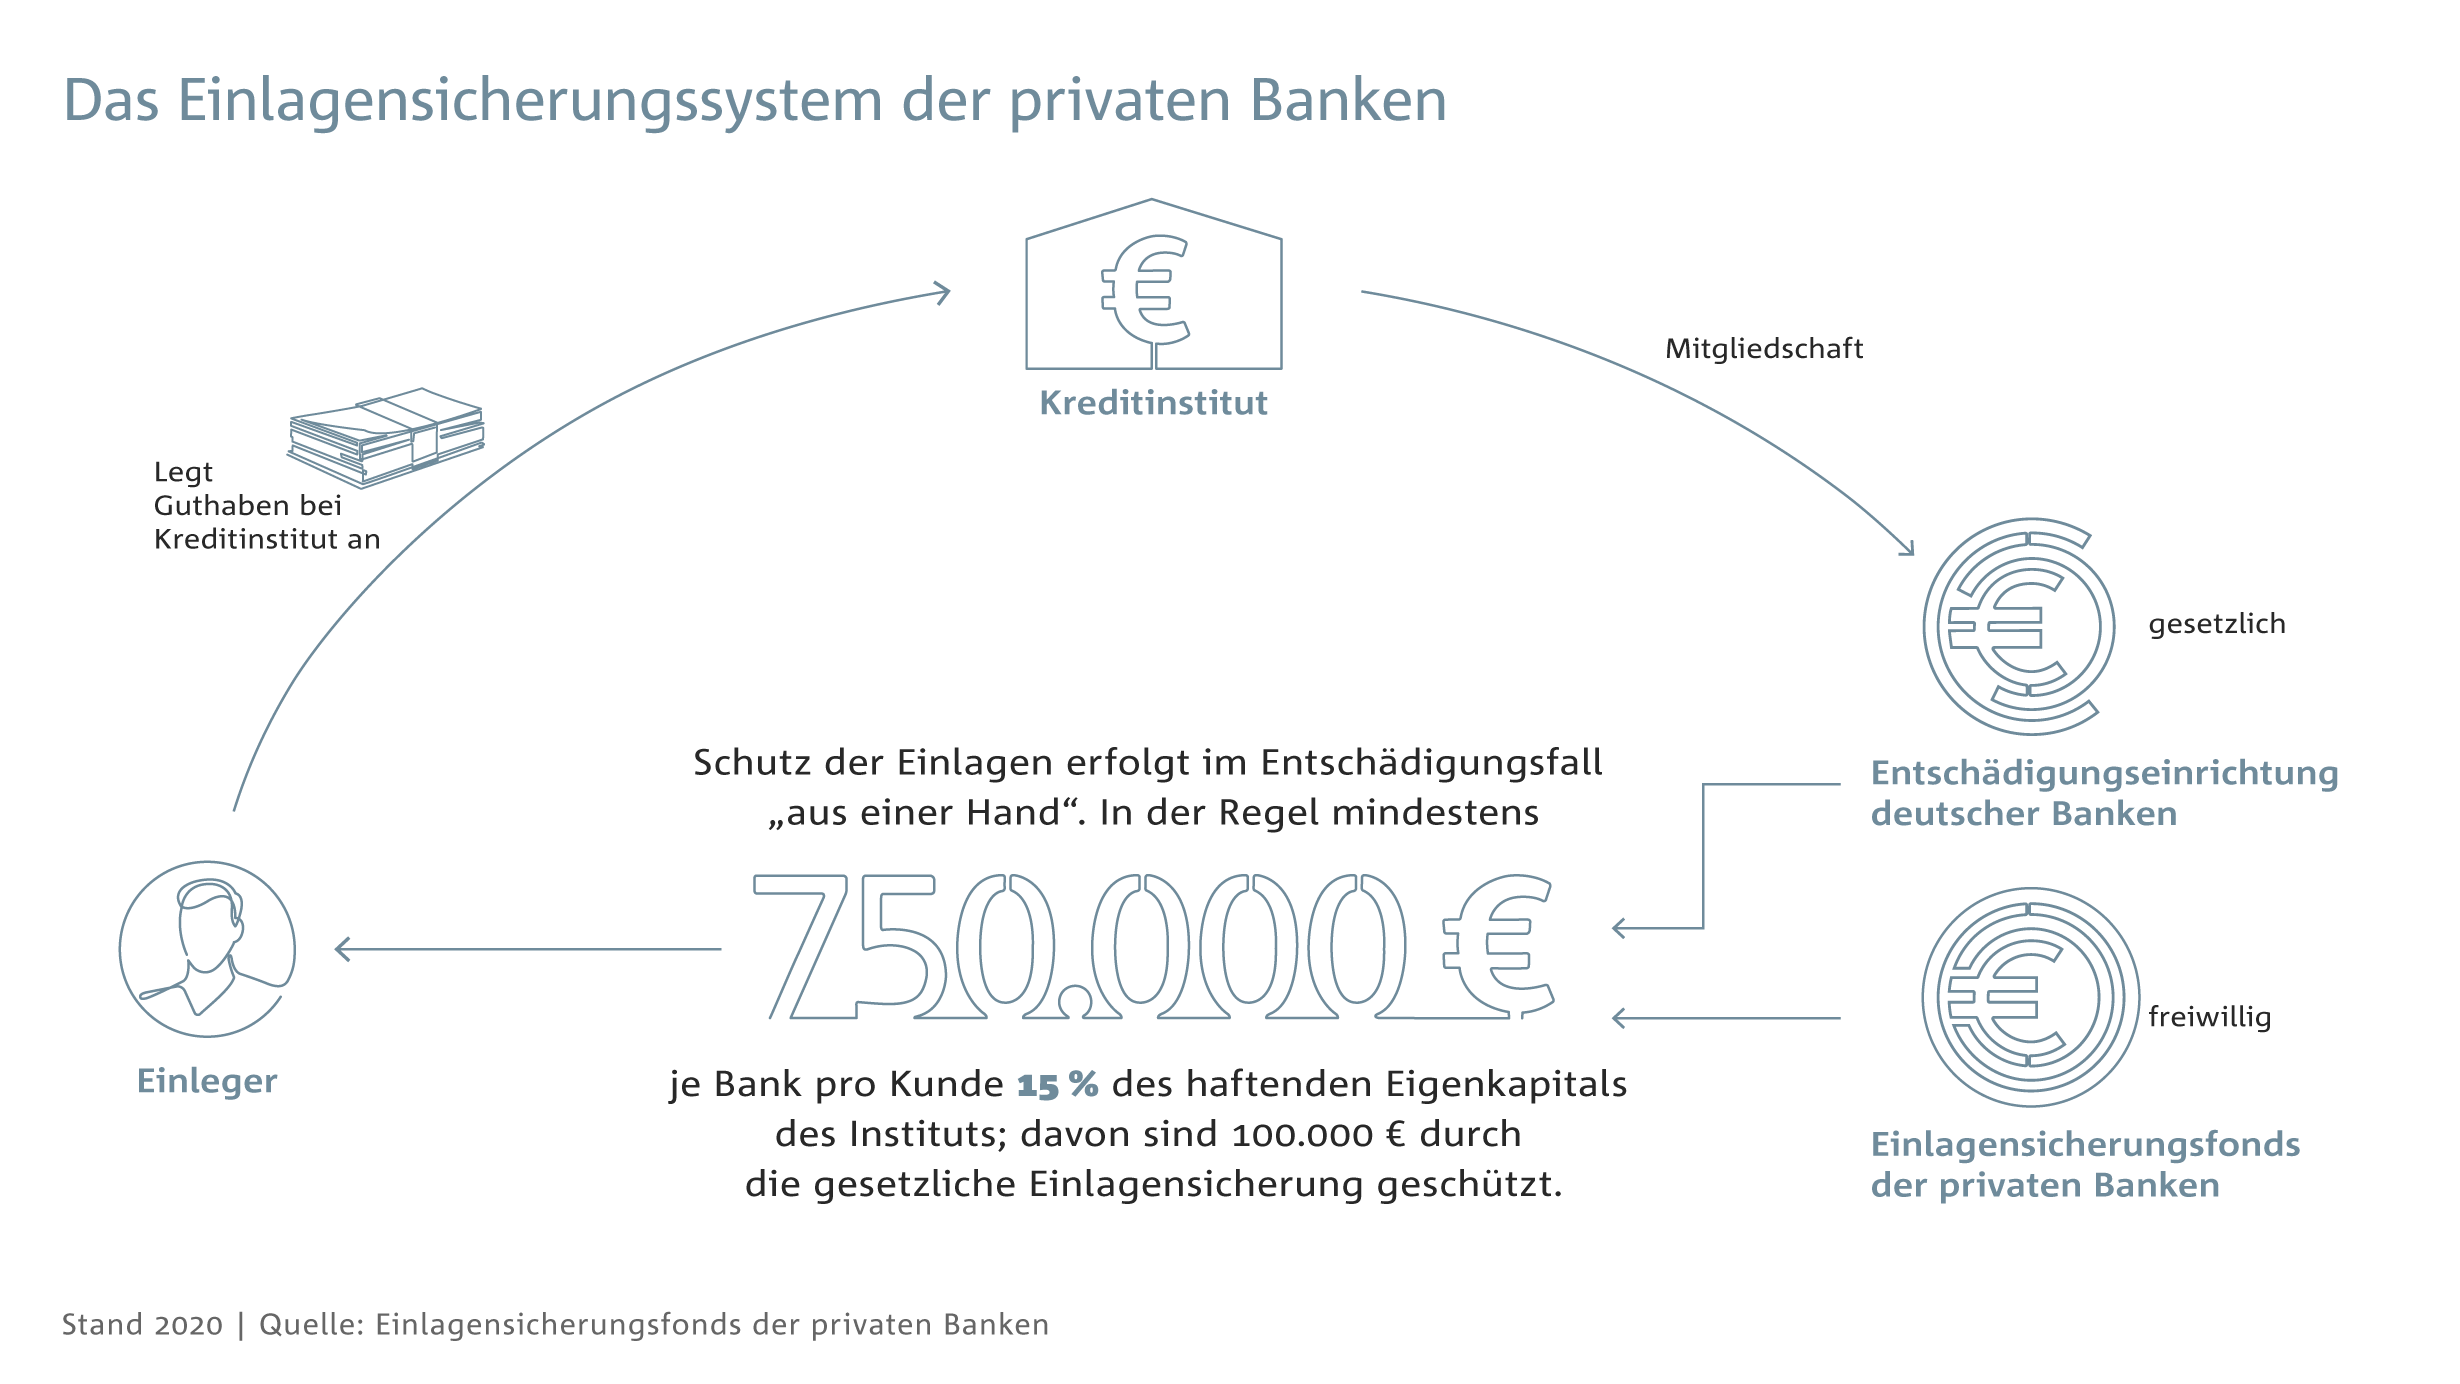 Das Einlagensicherungssystem der privaten Banken